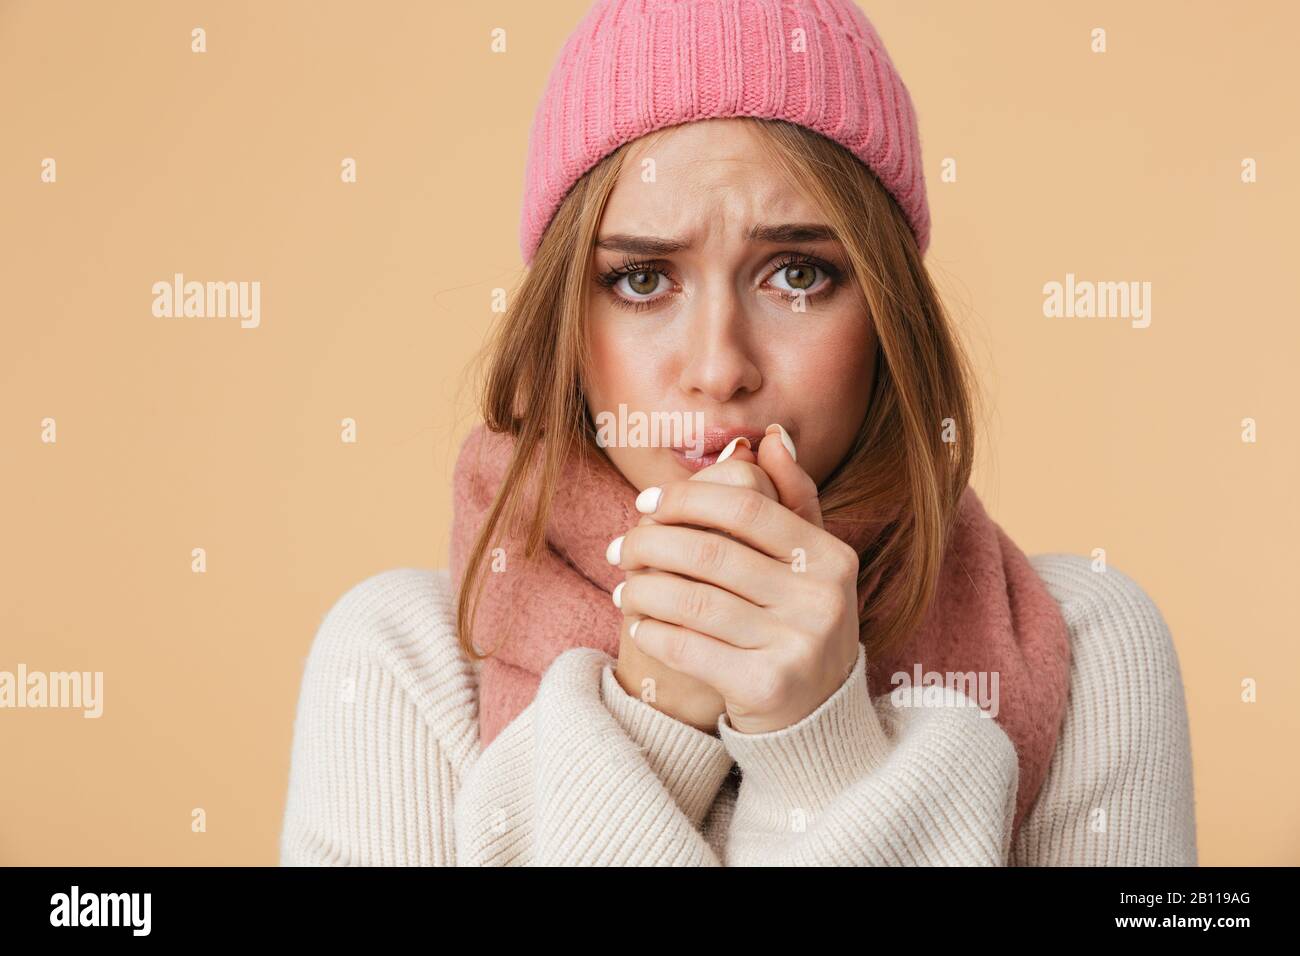 Immagine della giovane ragazza caucasica che indossa cappello invernale e sciarpa tremante e sensazione di freddo isolato su sfondo beige Foto Stock